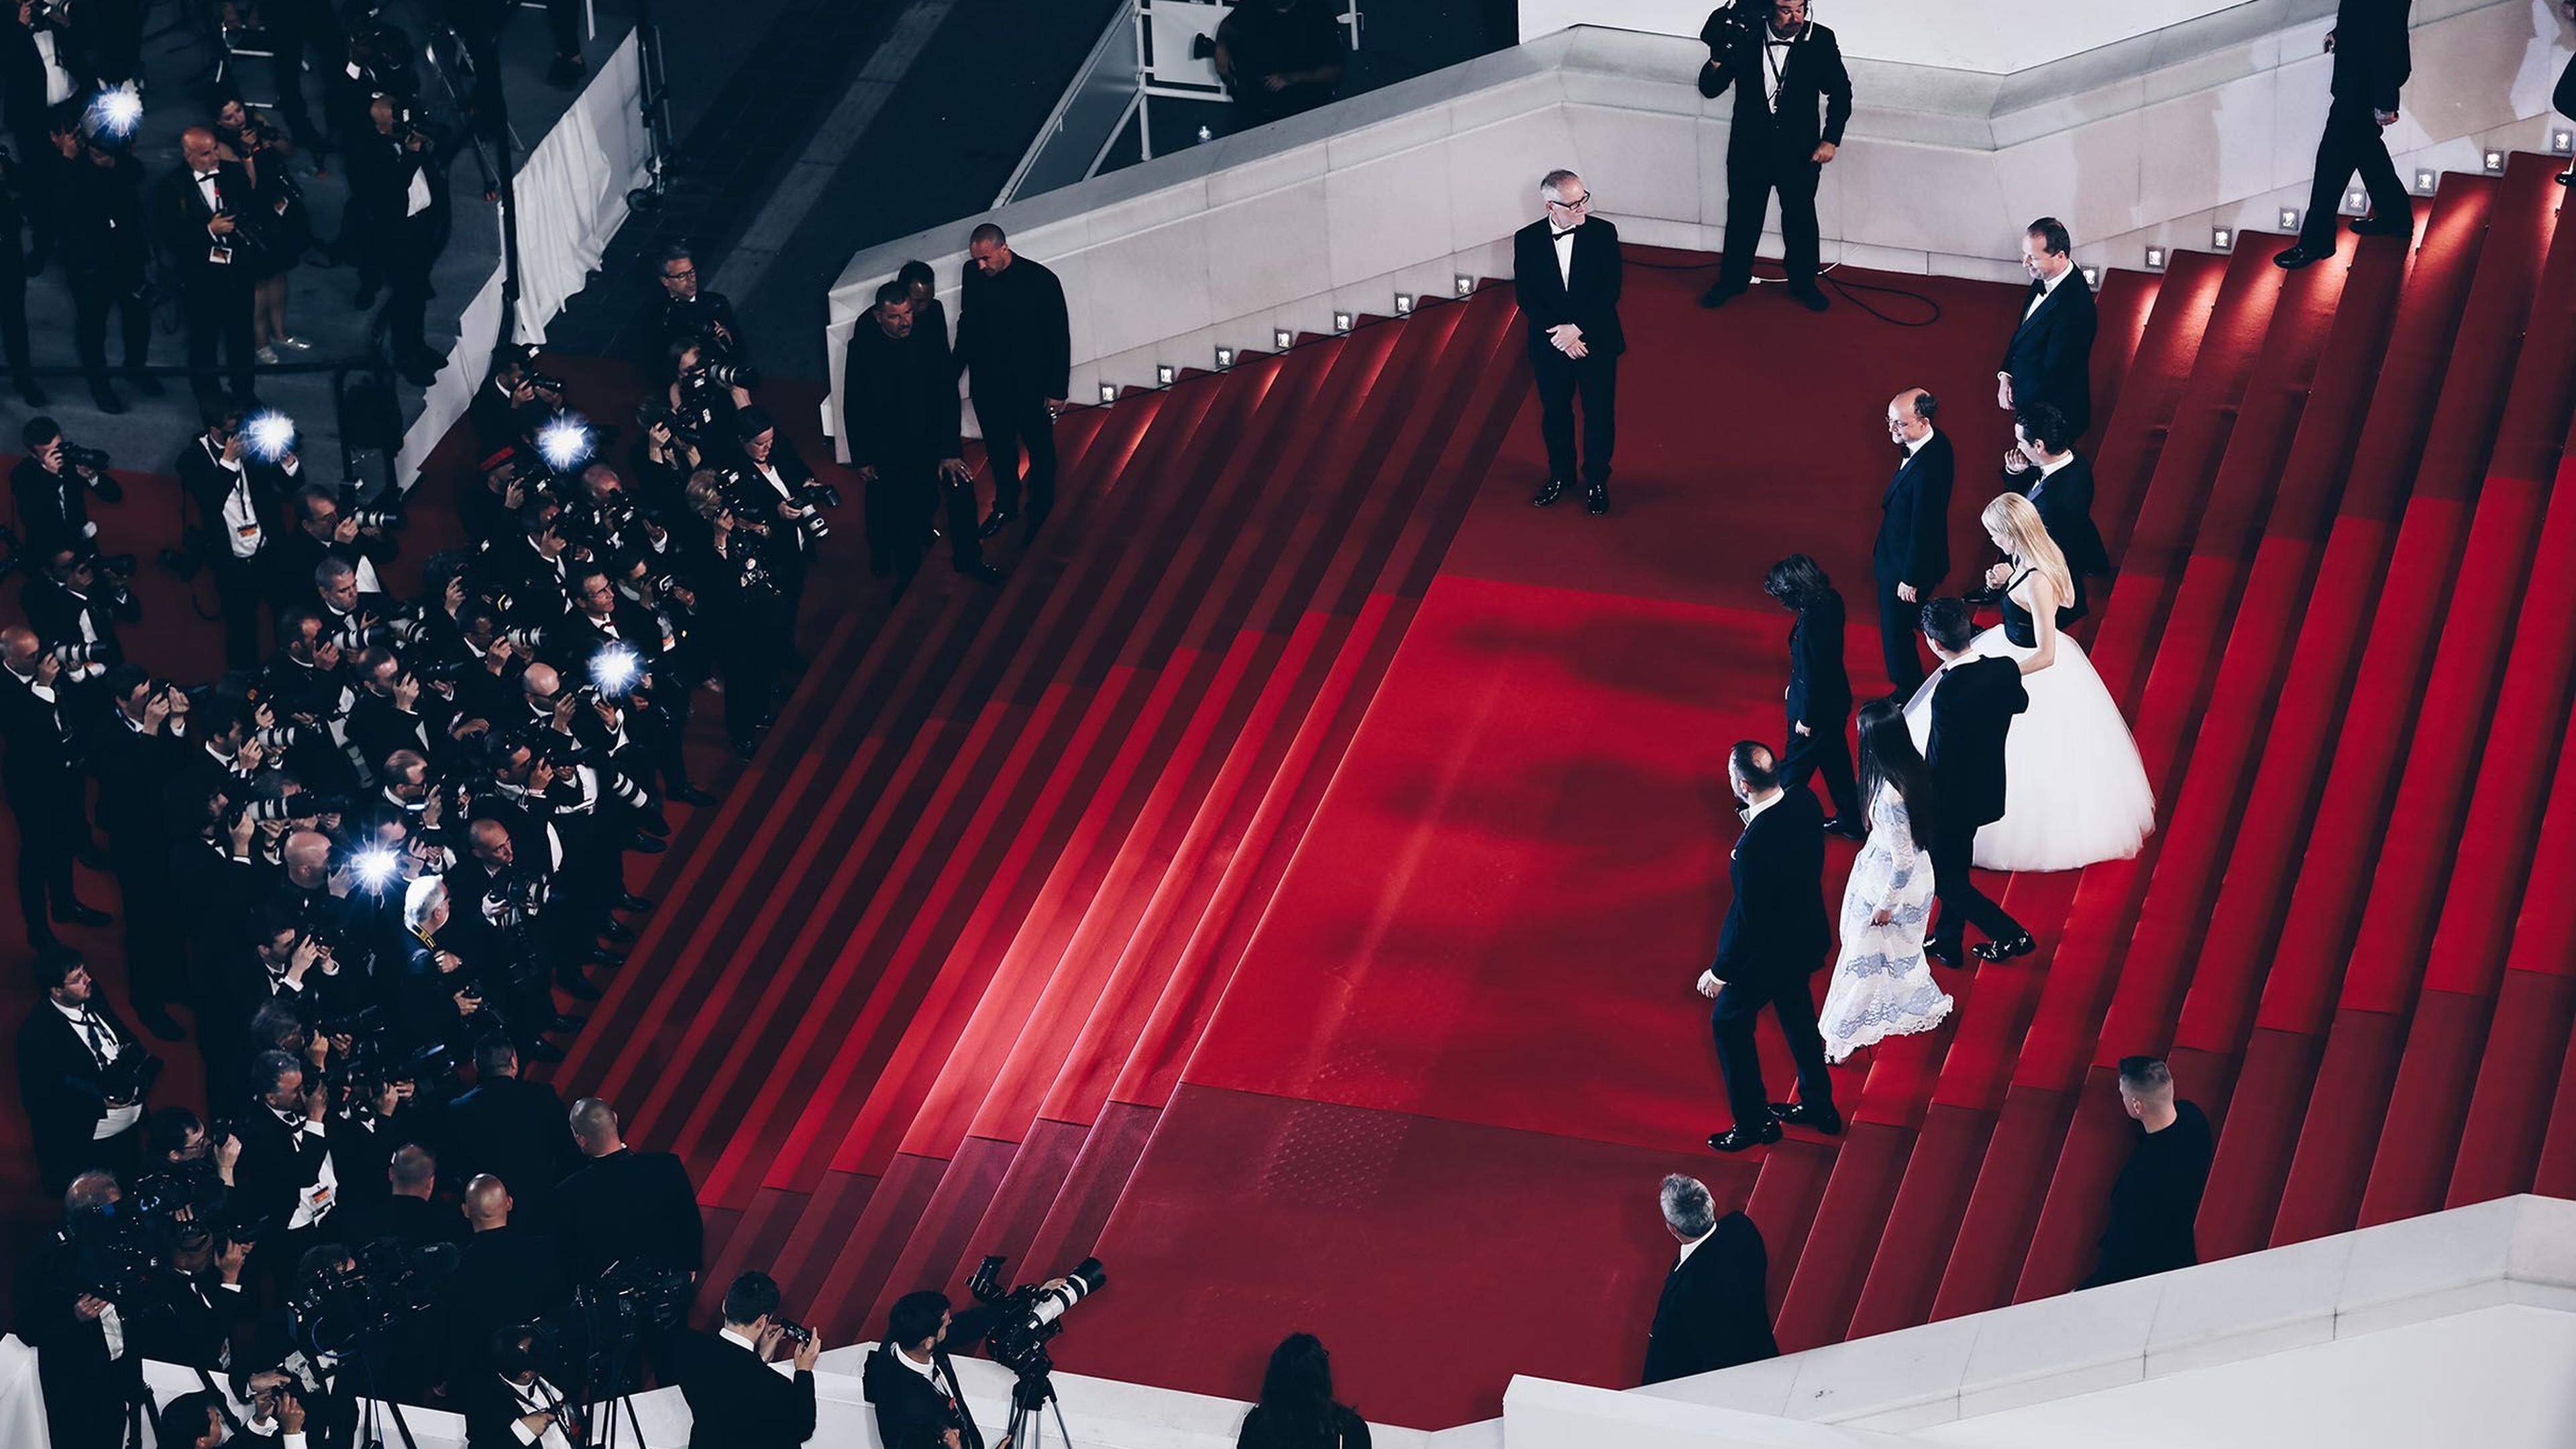 Auf dem Roten Teppich werden auch dieses Jahr wieder jede Menge internationale Weltstars erwartet, darunter: Emma Stone, Kevin Costner, George Miller, Francis Ford Coppola und Cate Blanchett.